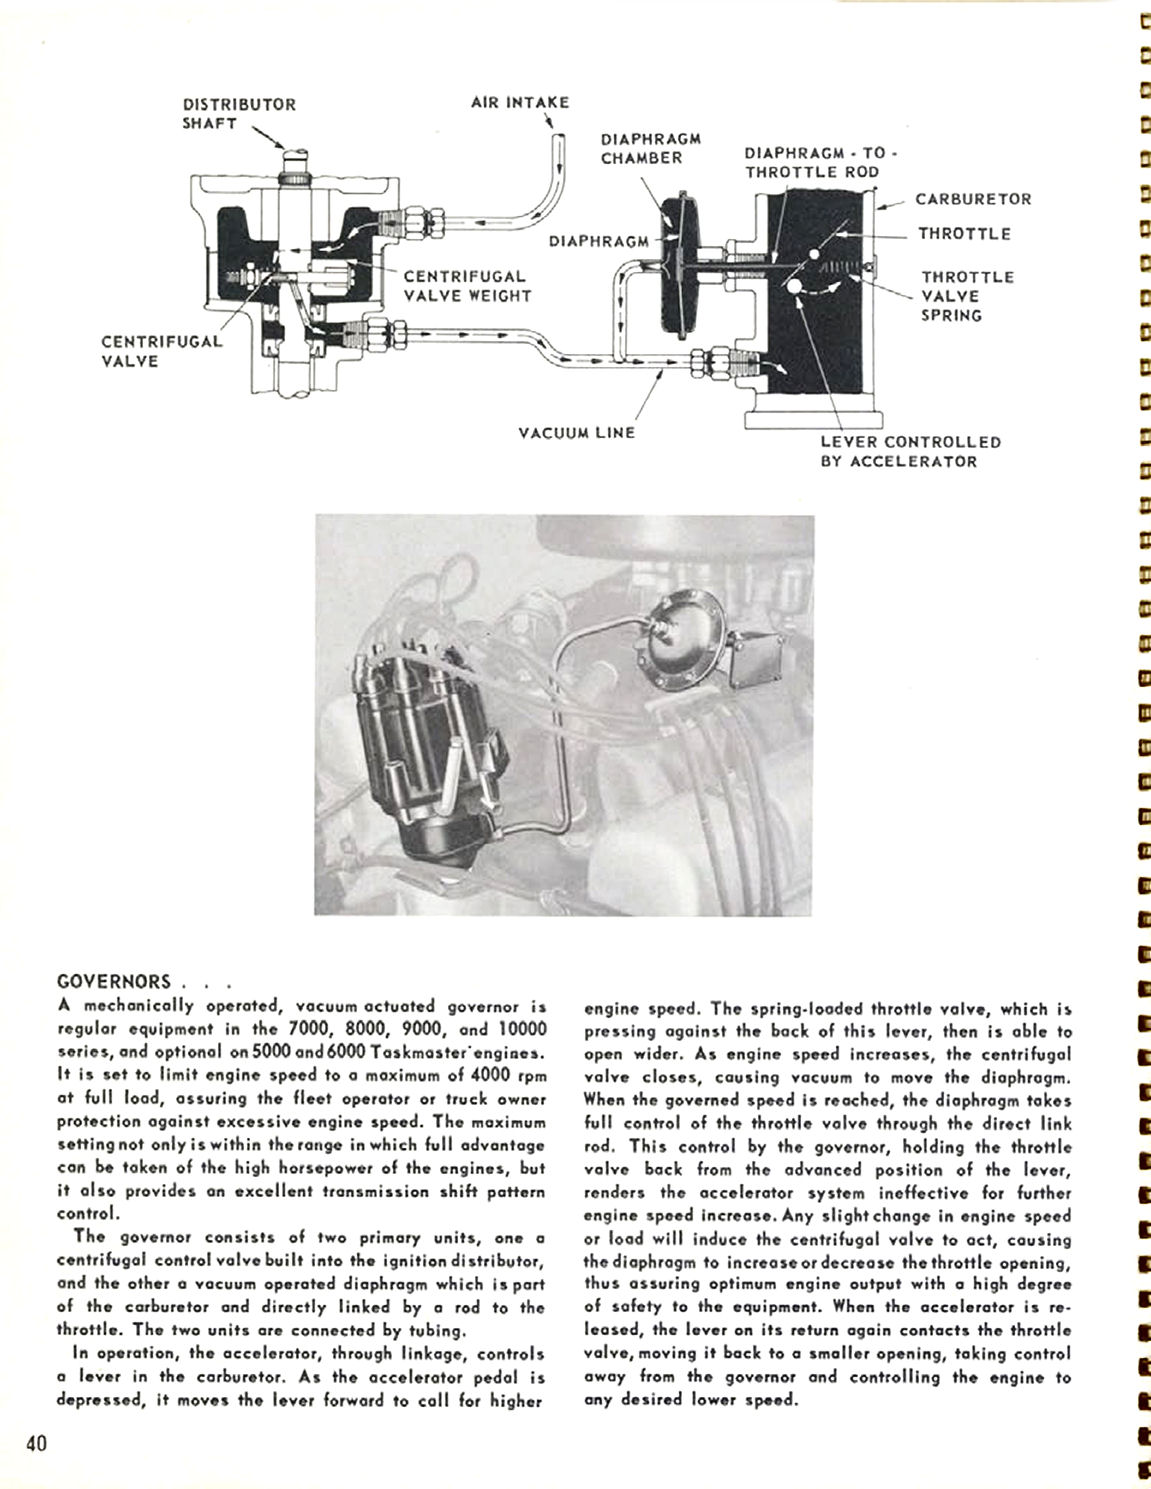 1956_Chevrolet_Truck_Engineering_Features-40